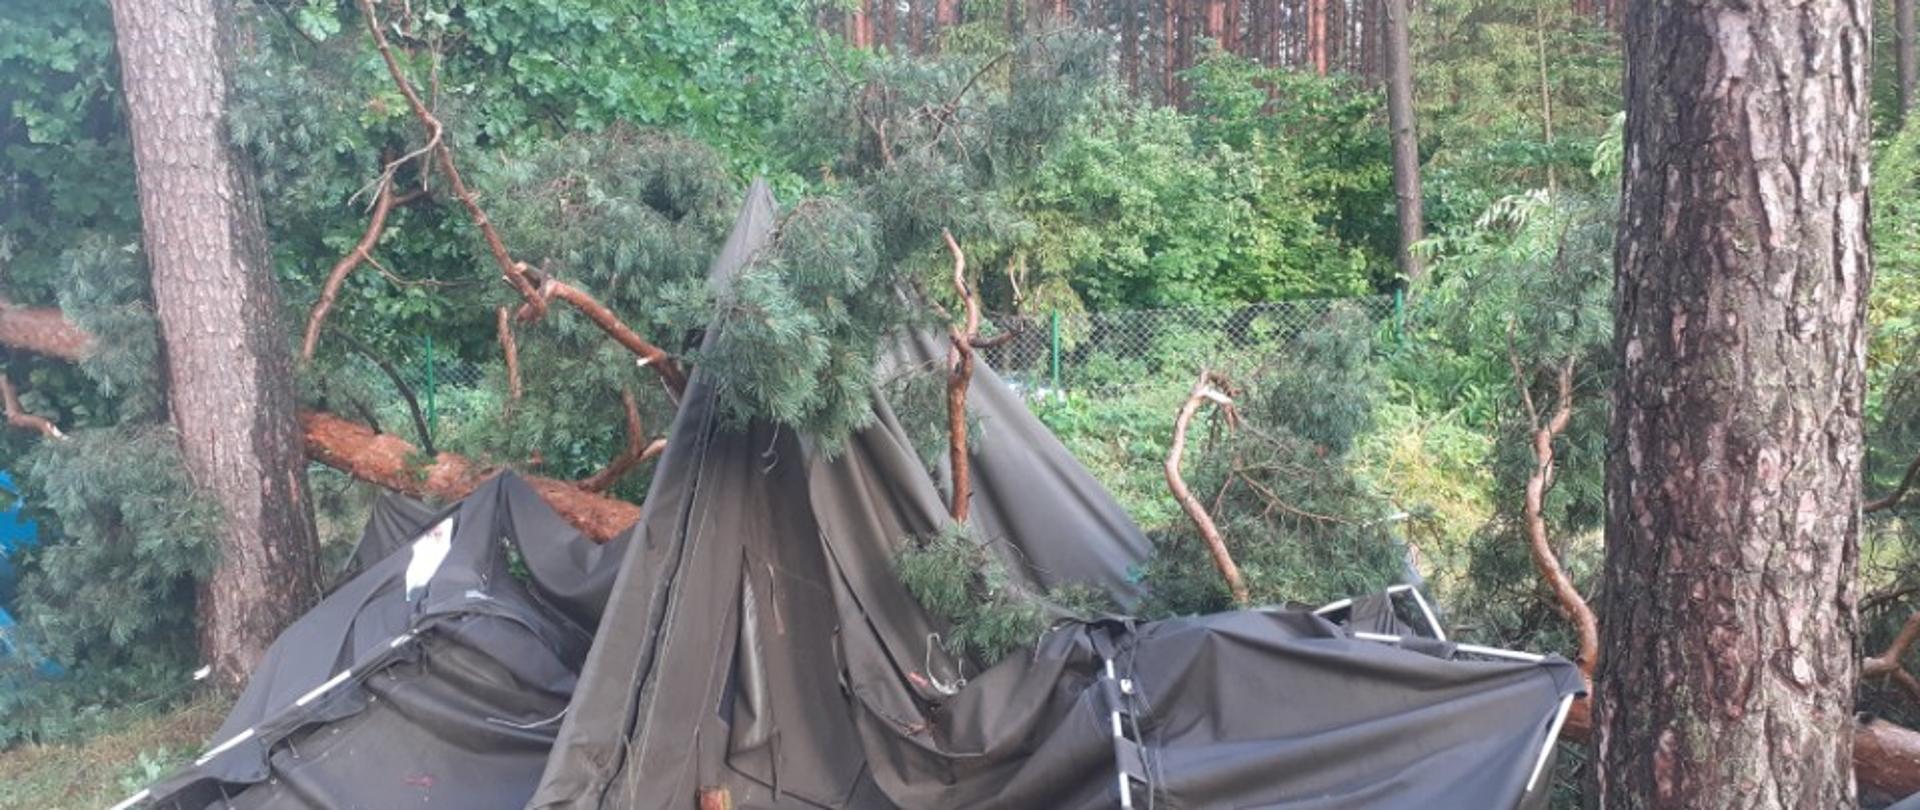 Ewakuacja obozu harcerskiego w Gaju drzewo spadło na namiot